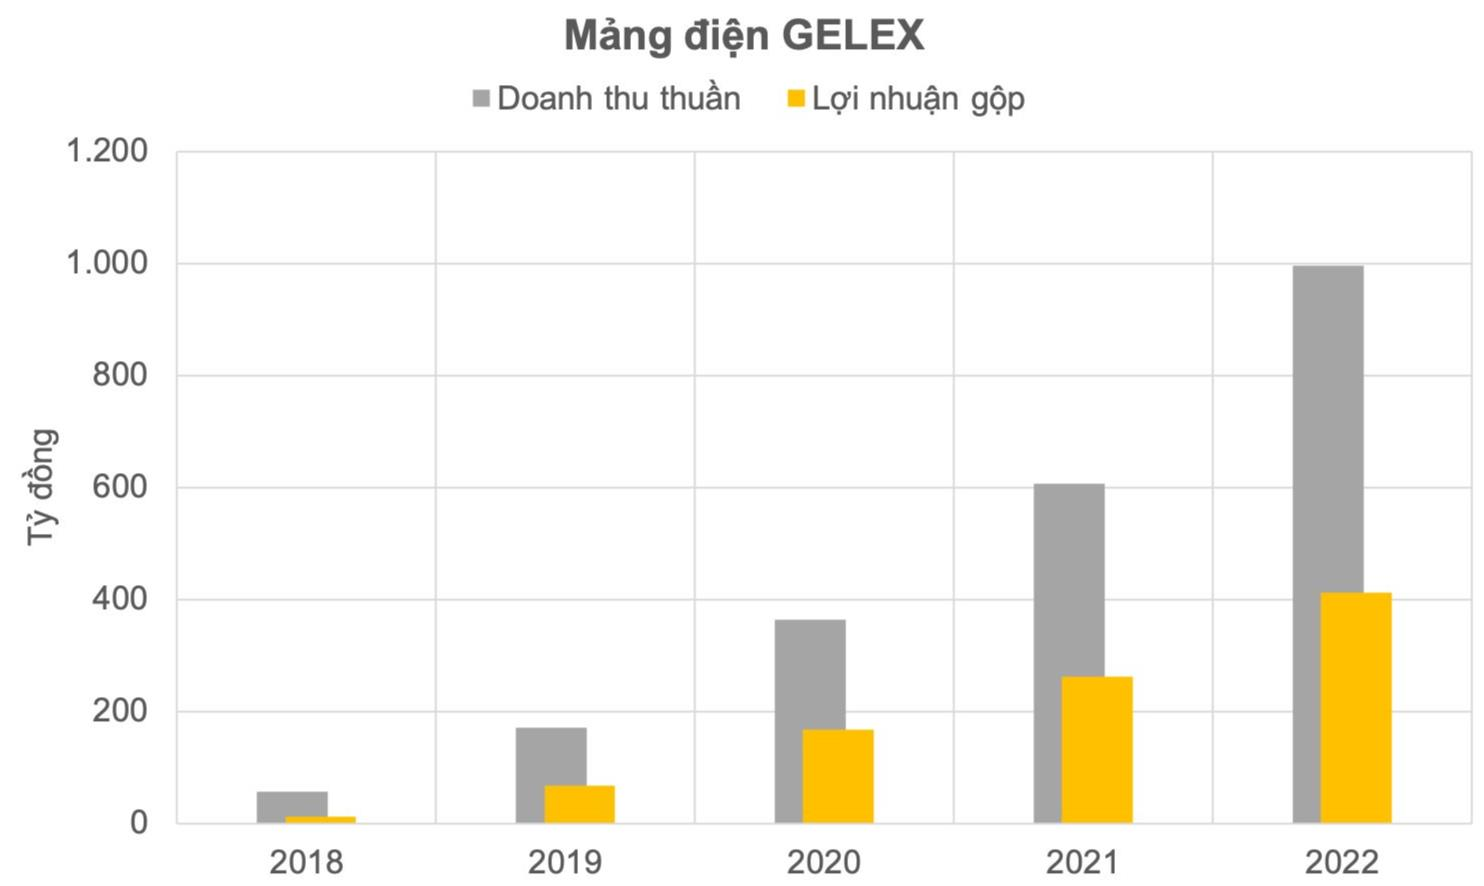 Mảng điện tái tạo đang được Gelex rao bán: Đạt mức doanh thu nghìn tỷ sau 5 năm nhưng lợi nhuận gộp mới là điều ấn tượng - Ảnh 1.